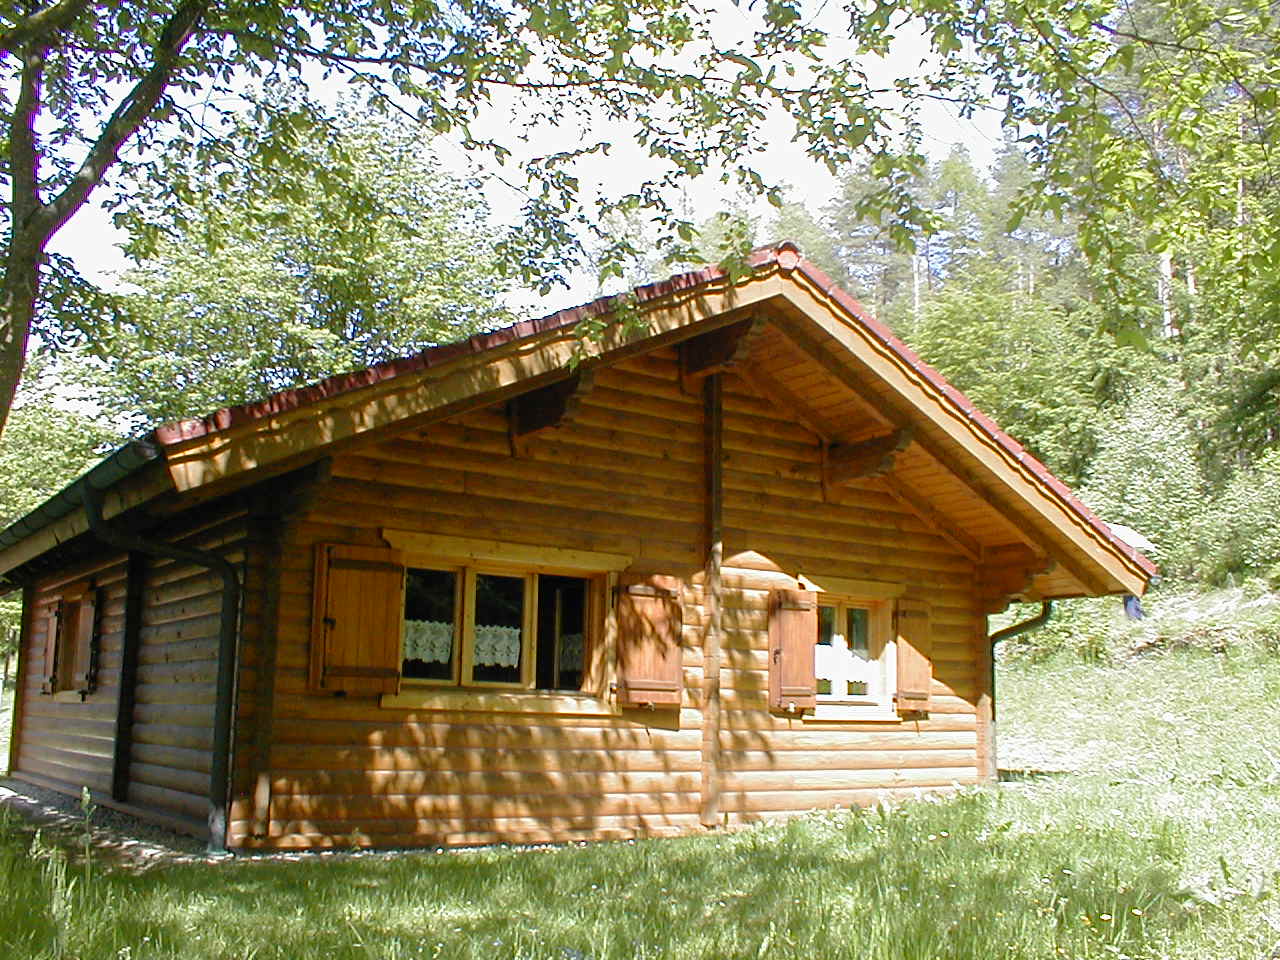  Ferienhaus 8 im Frühling / Blockhaus in Stamsried / Bayerischer Wald